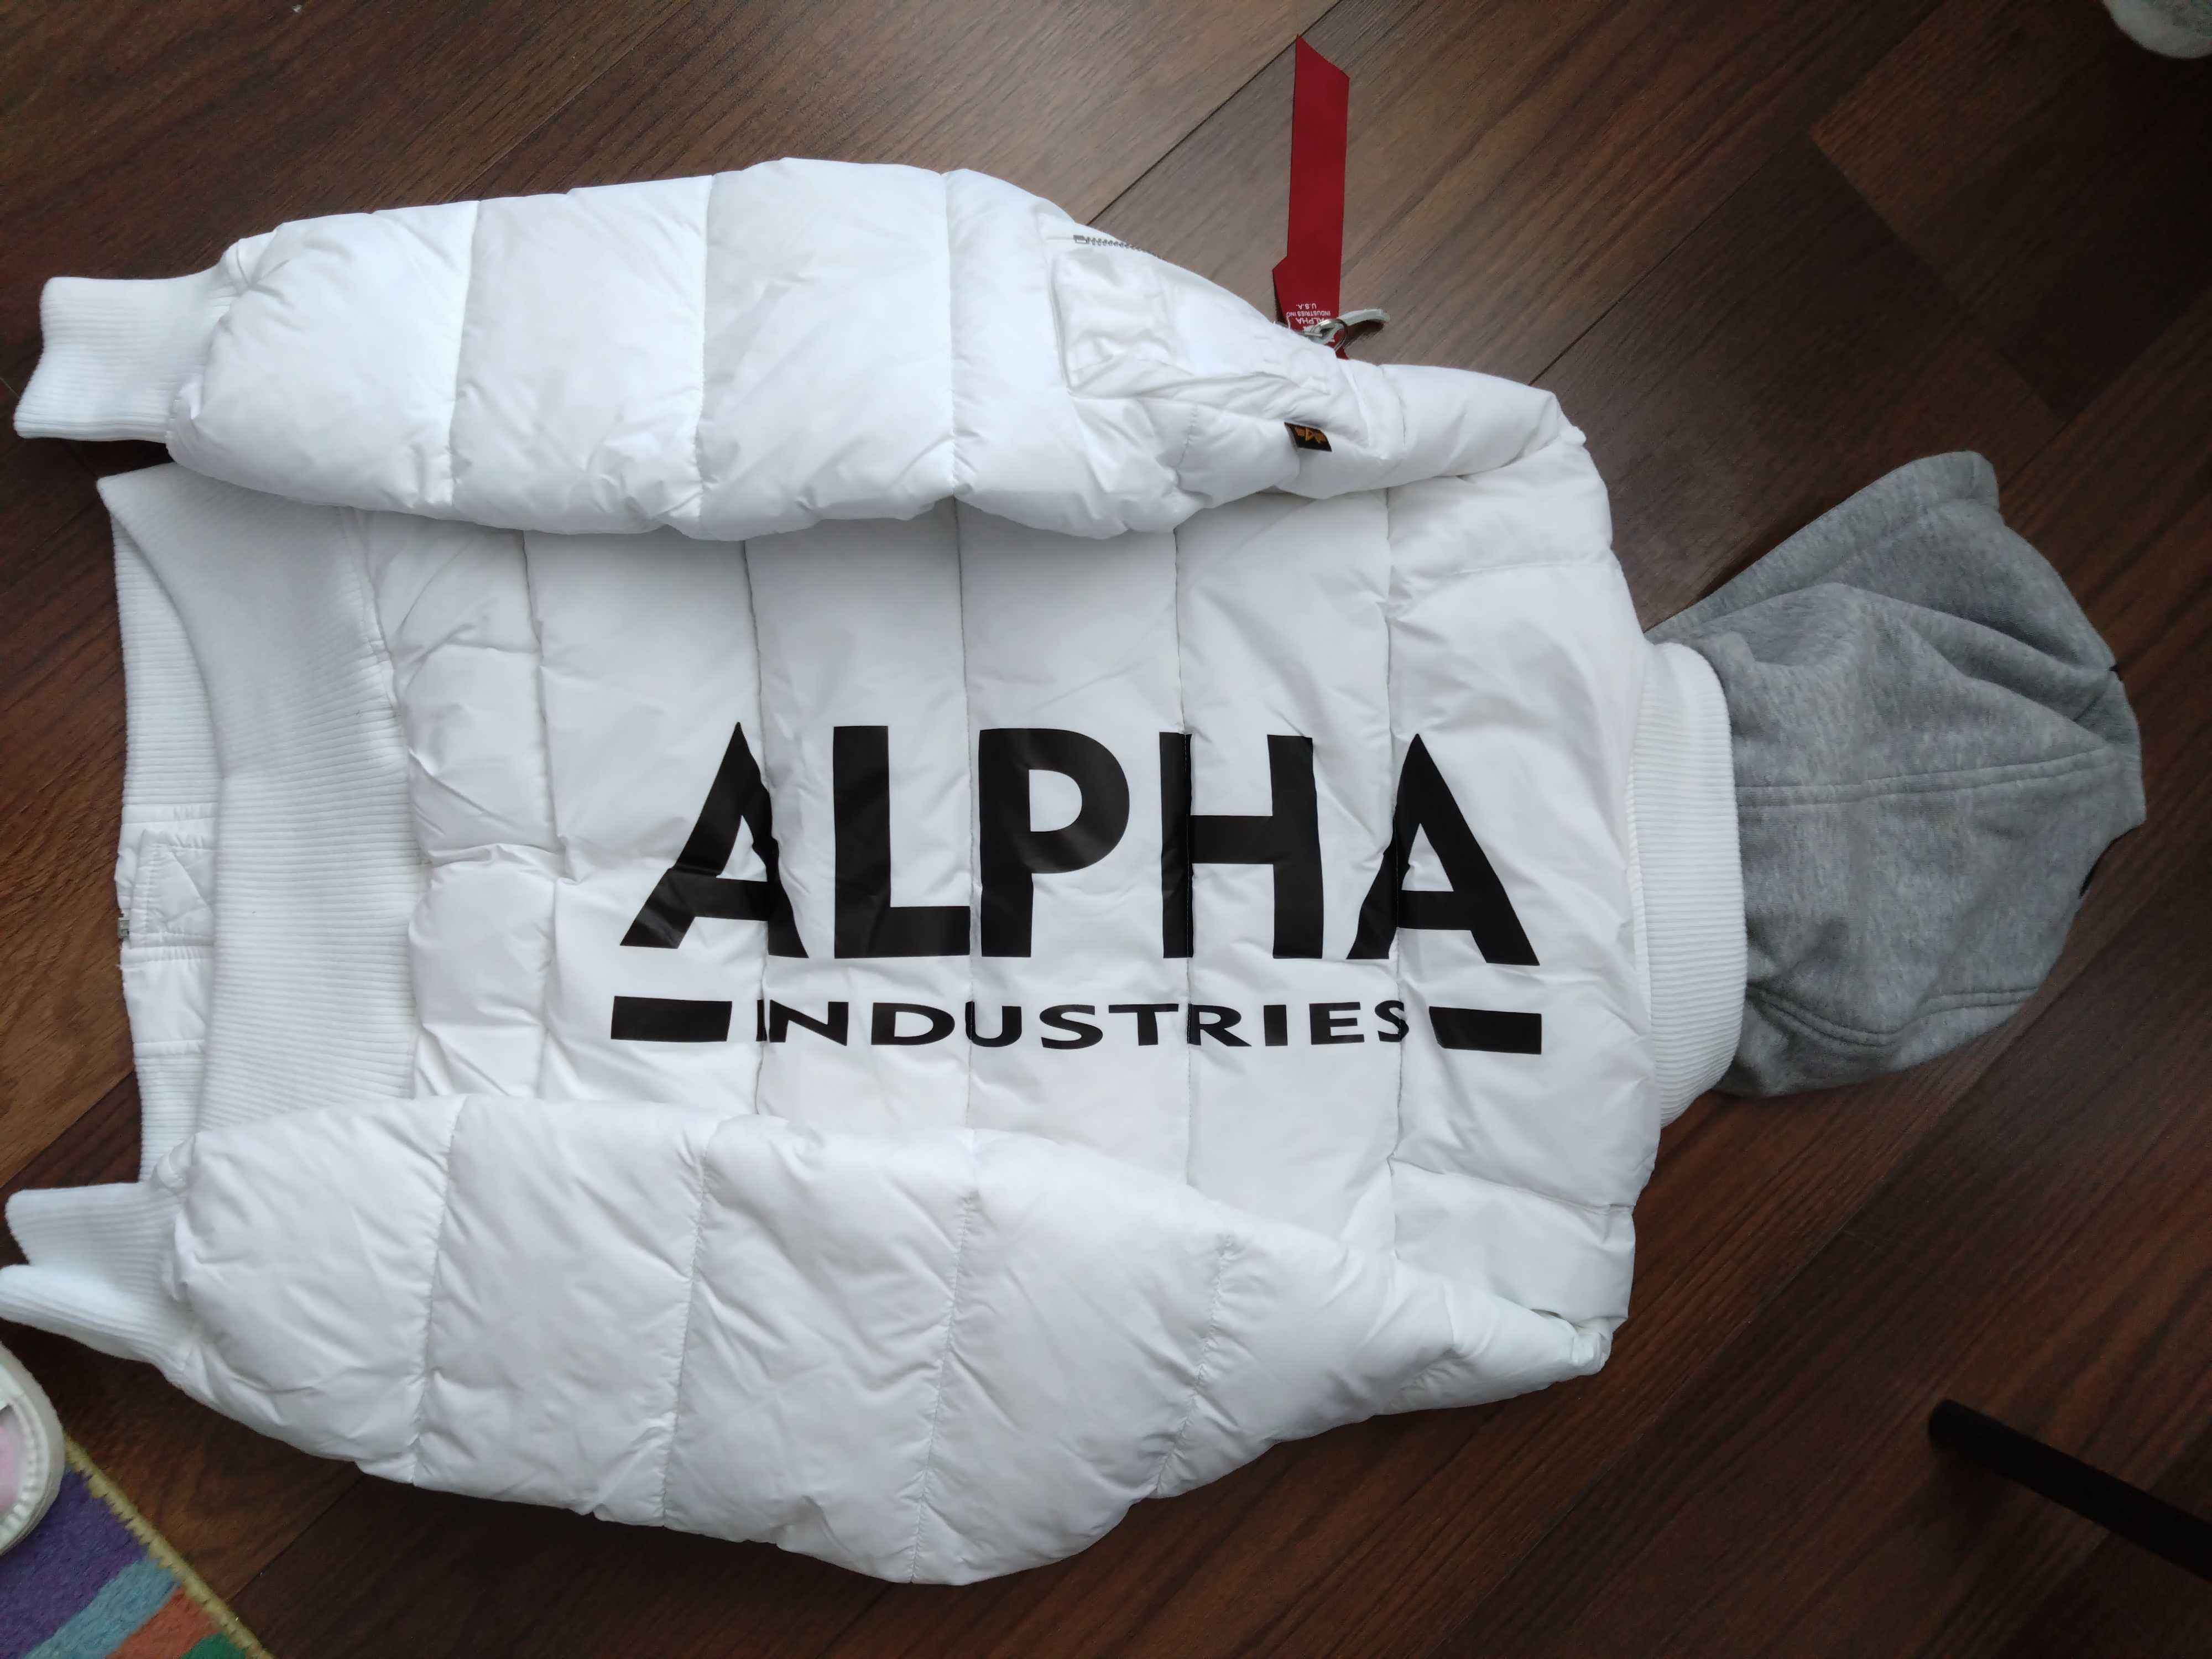 Kurtka zimowa/biała firmy Alpha Industries - rozmiar S